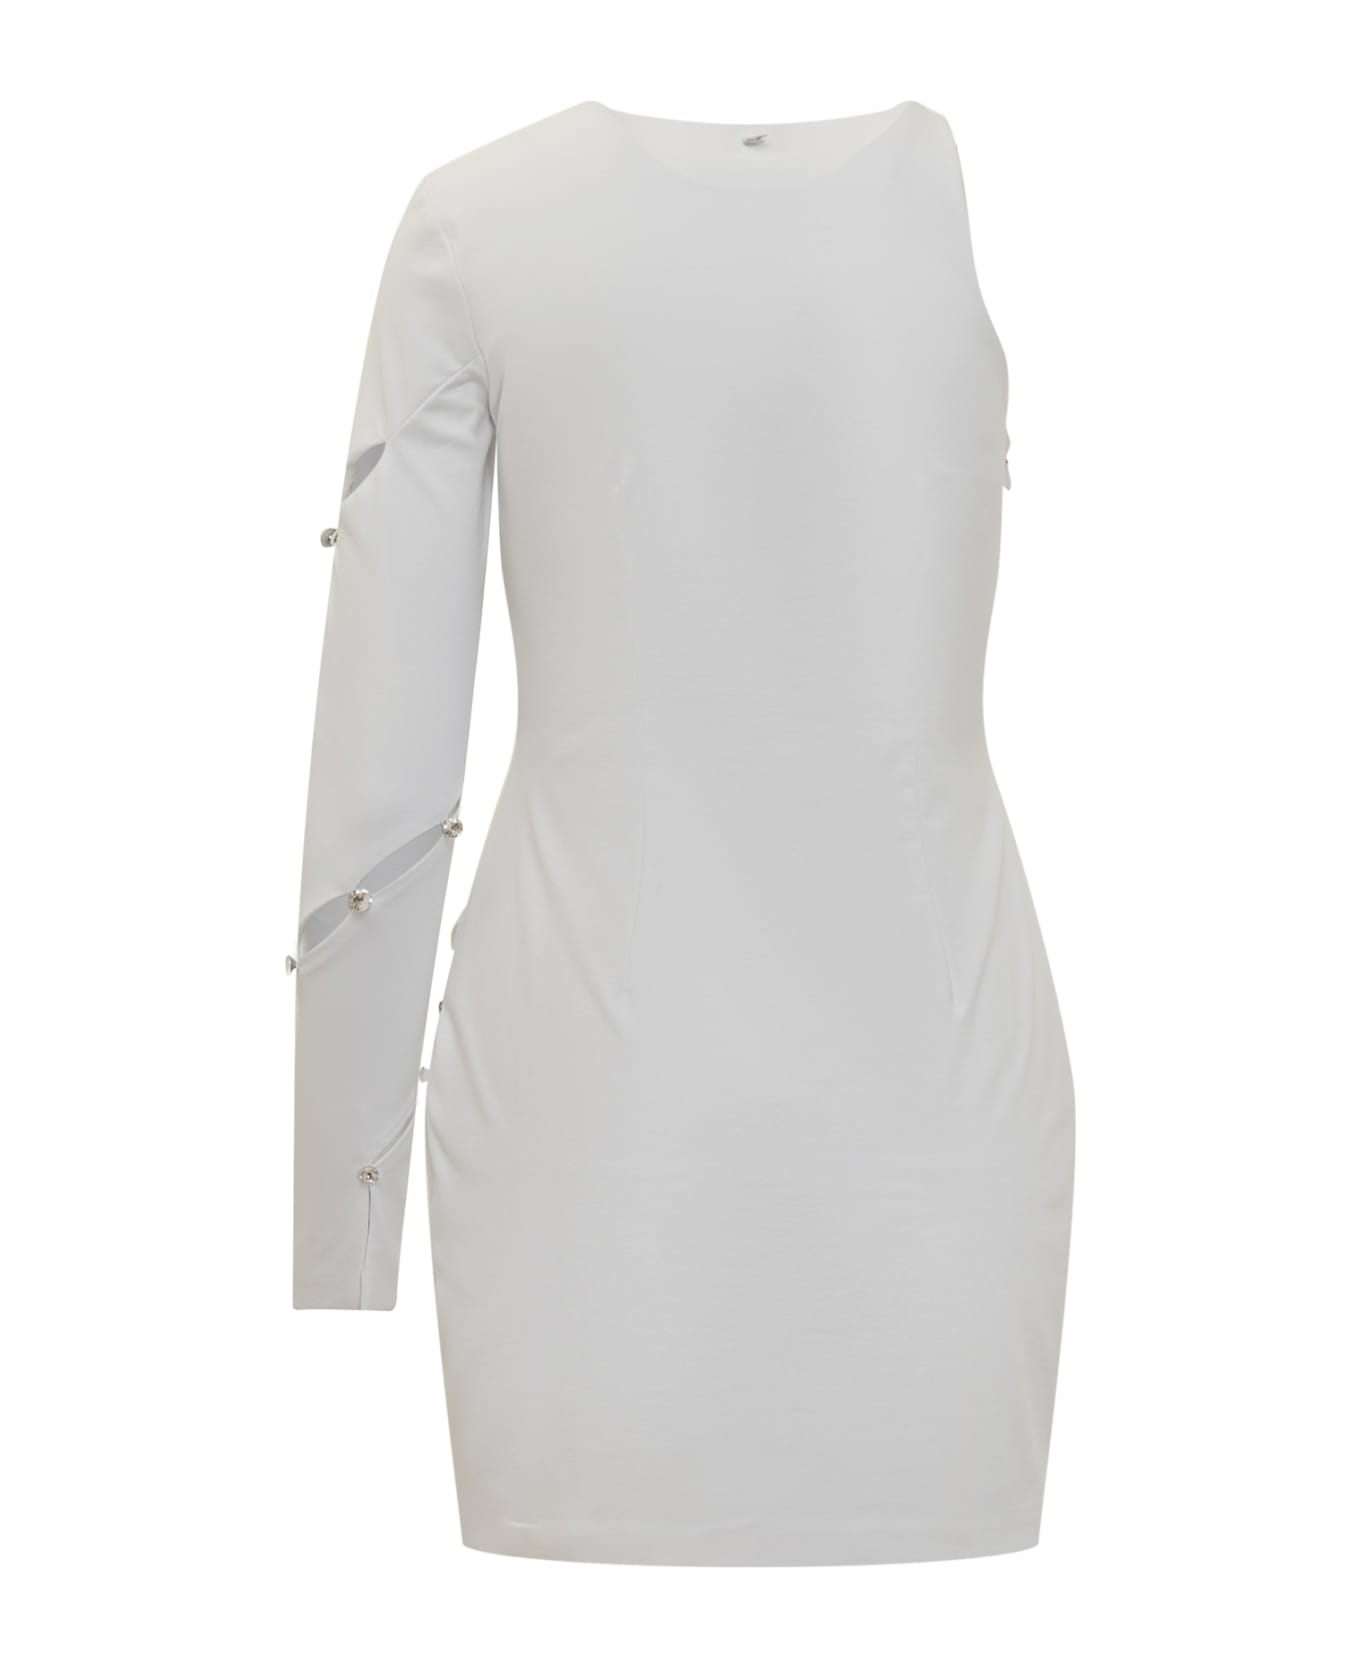 Chiara Ferragni Hole 926 Dress - WHITE